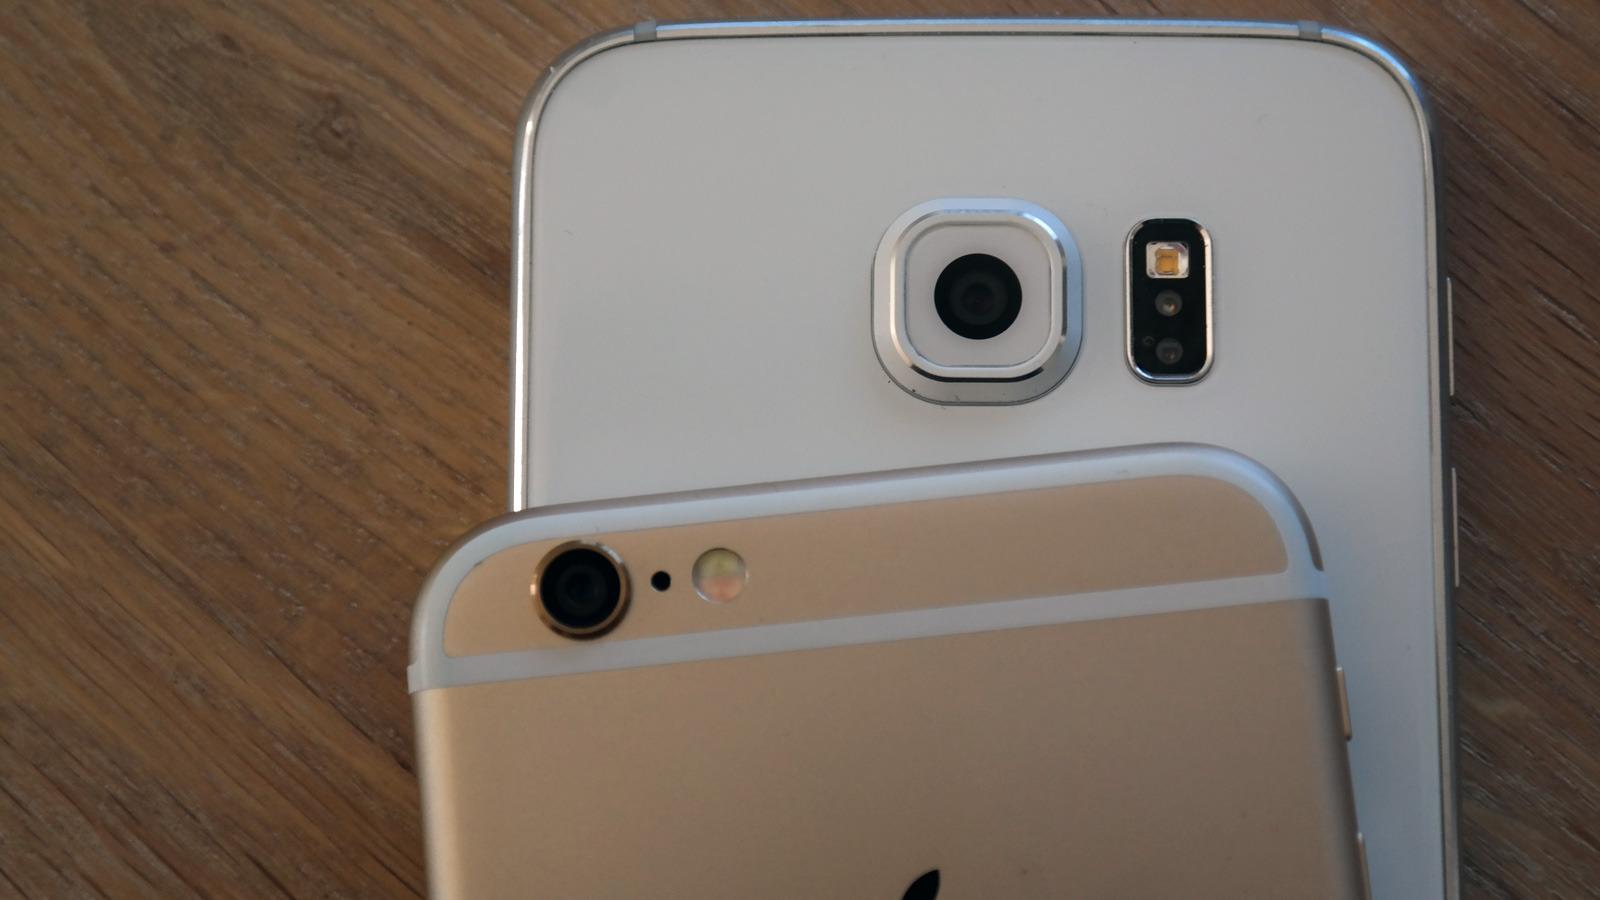 Begge kan ta bilder, men Samsungs kamera har høyere oppløsning.